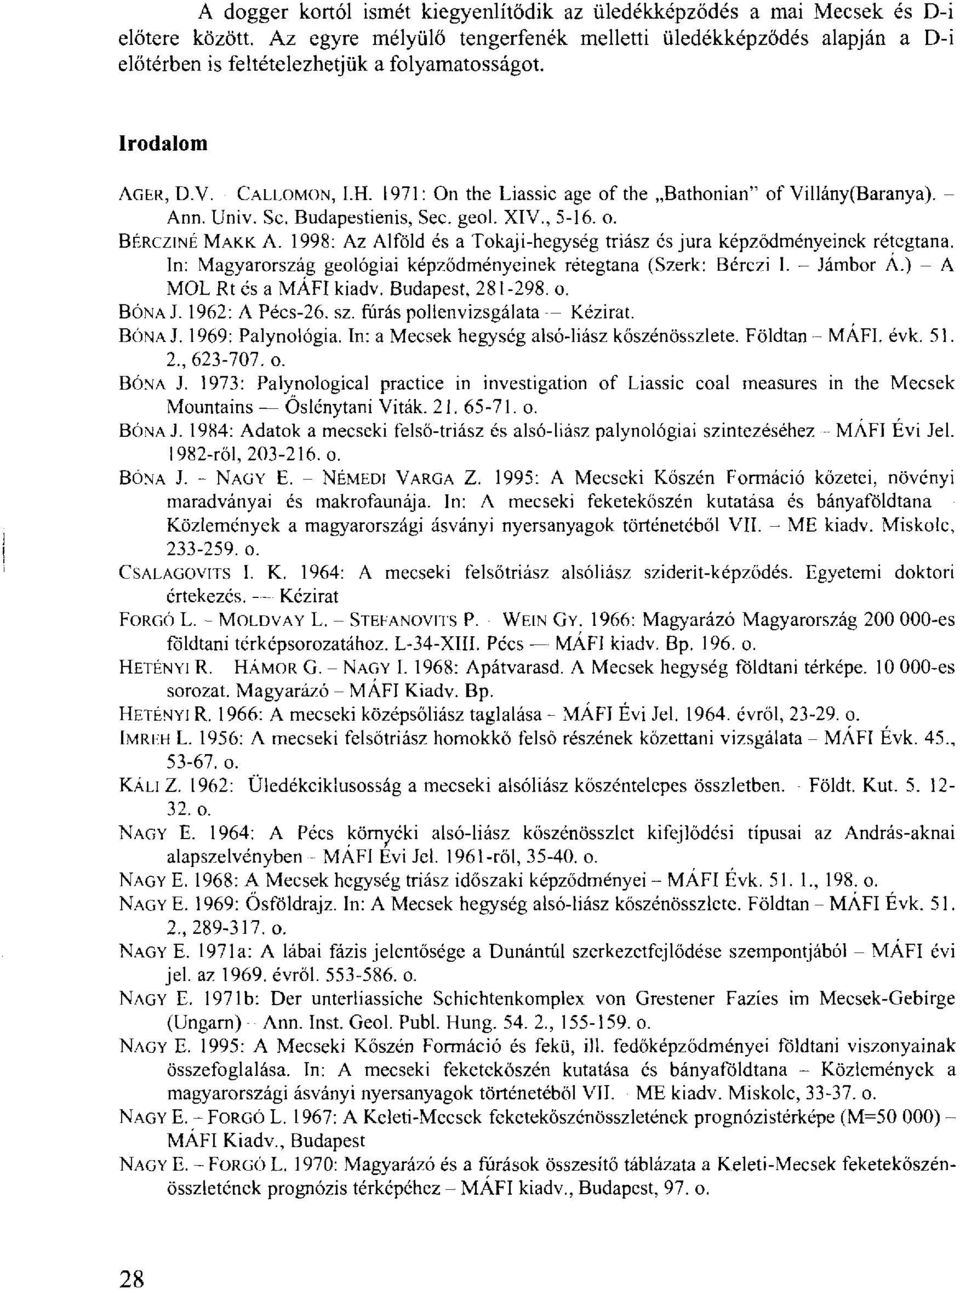 1971: On the Liassic age of the Bathonian" of Villány(Baranya). - Ann. Univ. Sc. Budapestienis, Sec. geol. XIV., 5-16. o. BÉRCZINÉ MAKK. A. 1998: Az Alföld és a Tokaji-hegység triász és jura képződményeinek rétegtana.